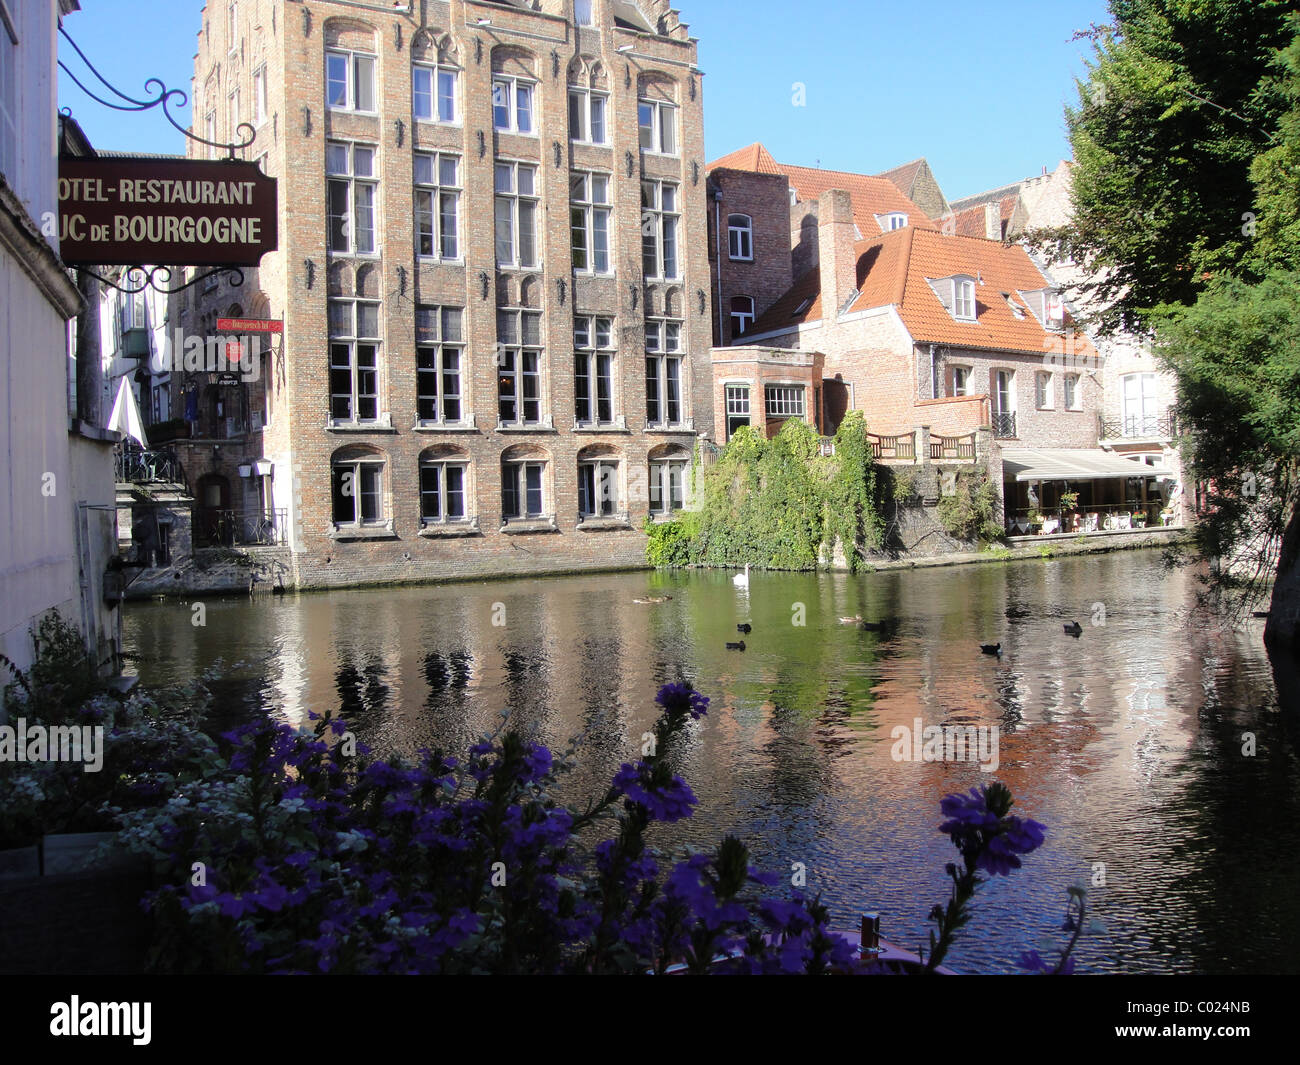 Bruges hotels and restaurants on River Dijver Stock Photo